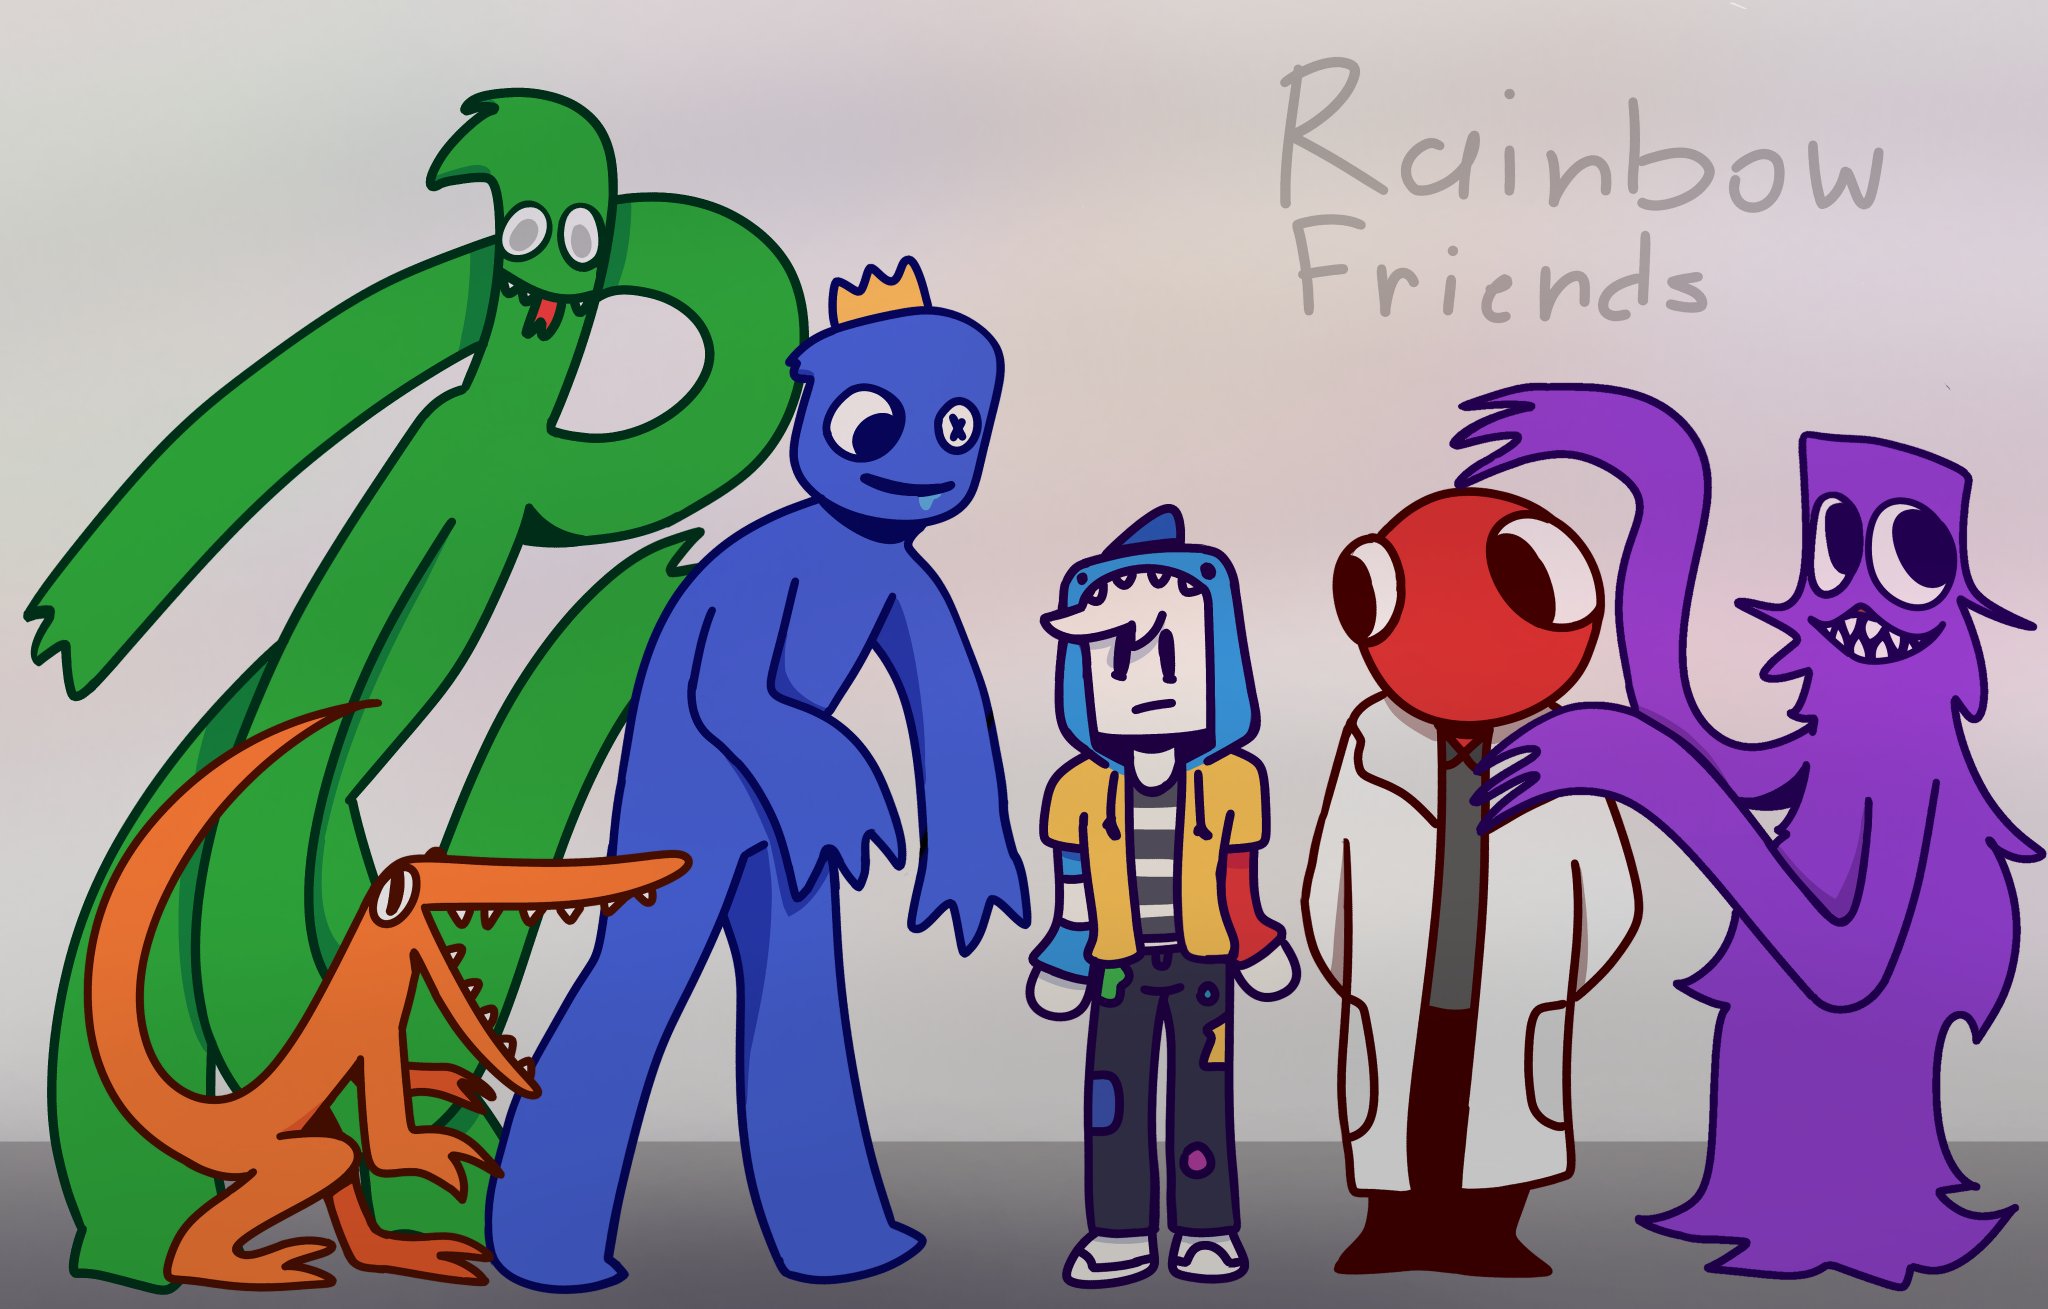 How to Draw 🌈 Rainbow Friends 2 🌈 (BLUE ) #rainbowfriends 